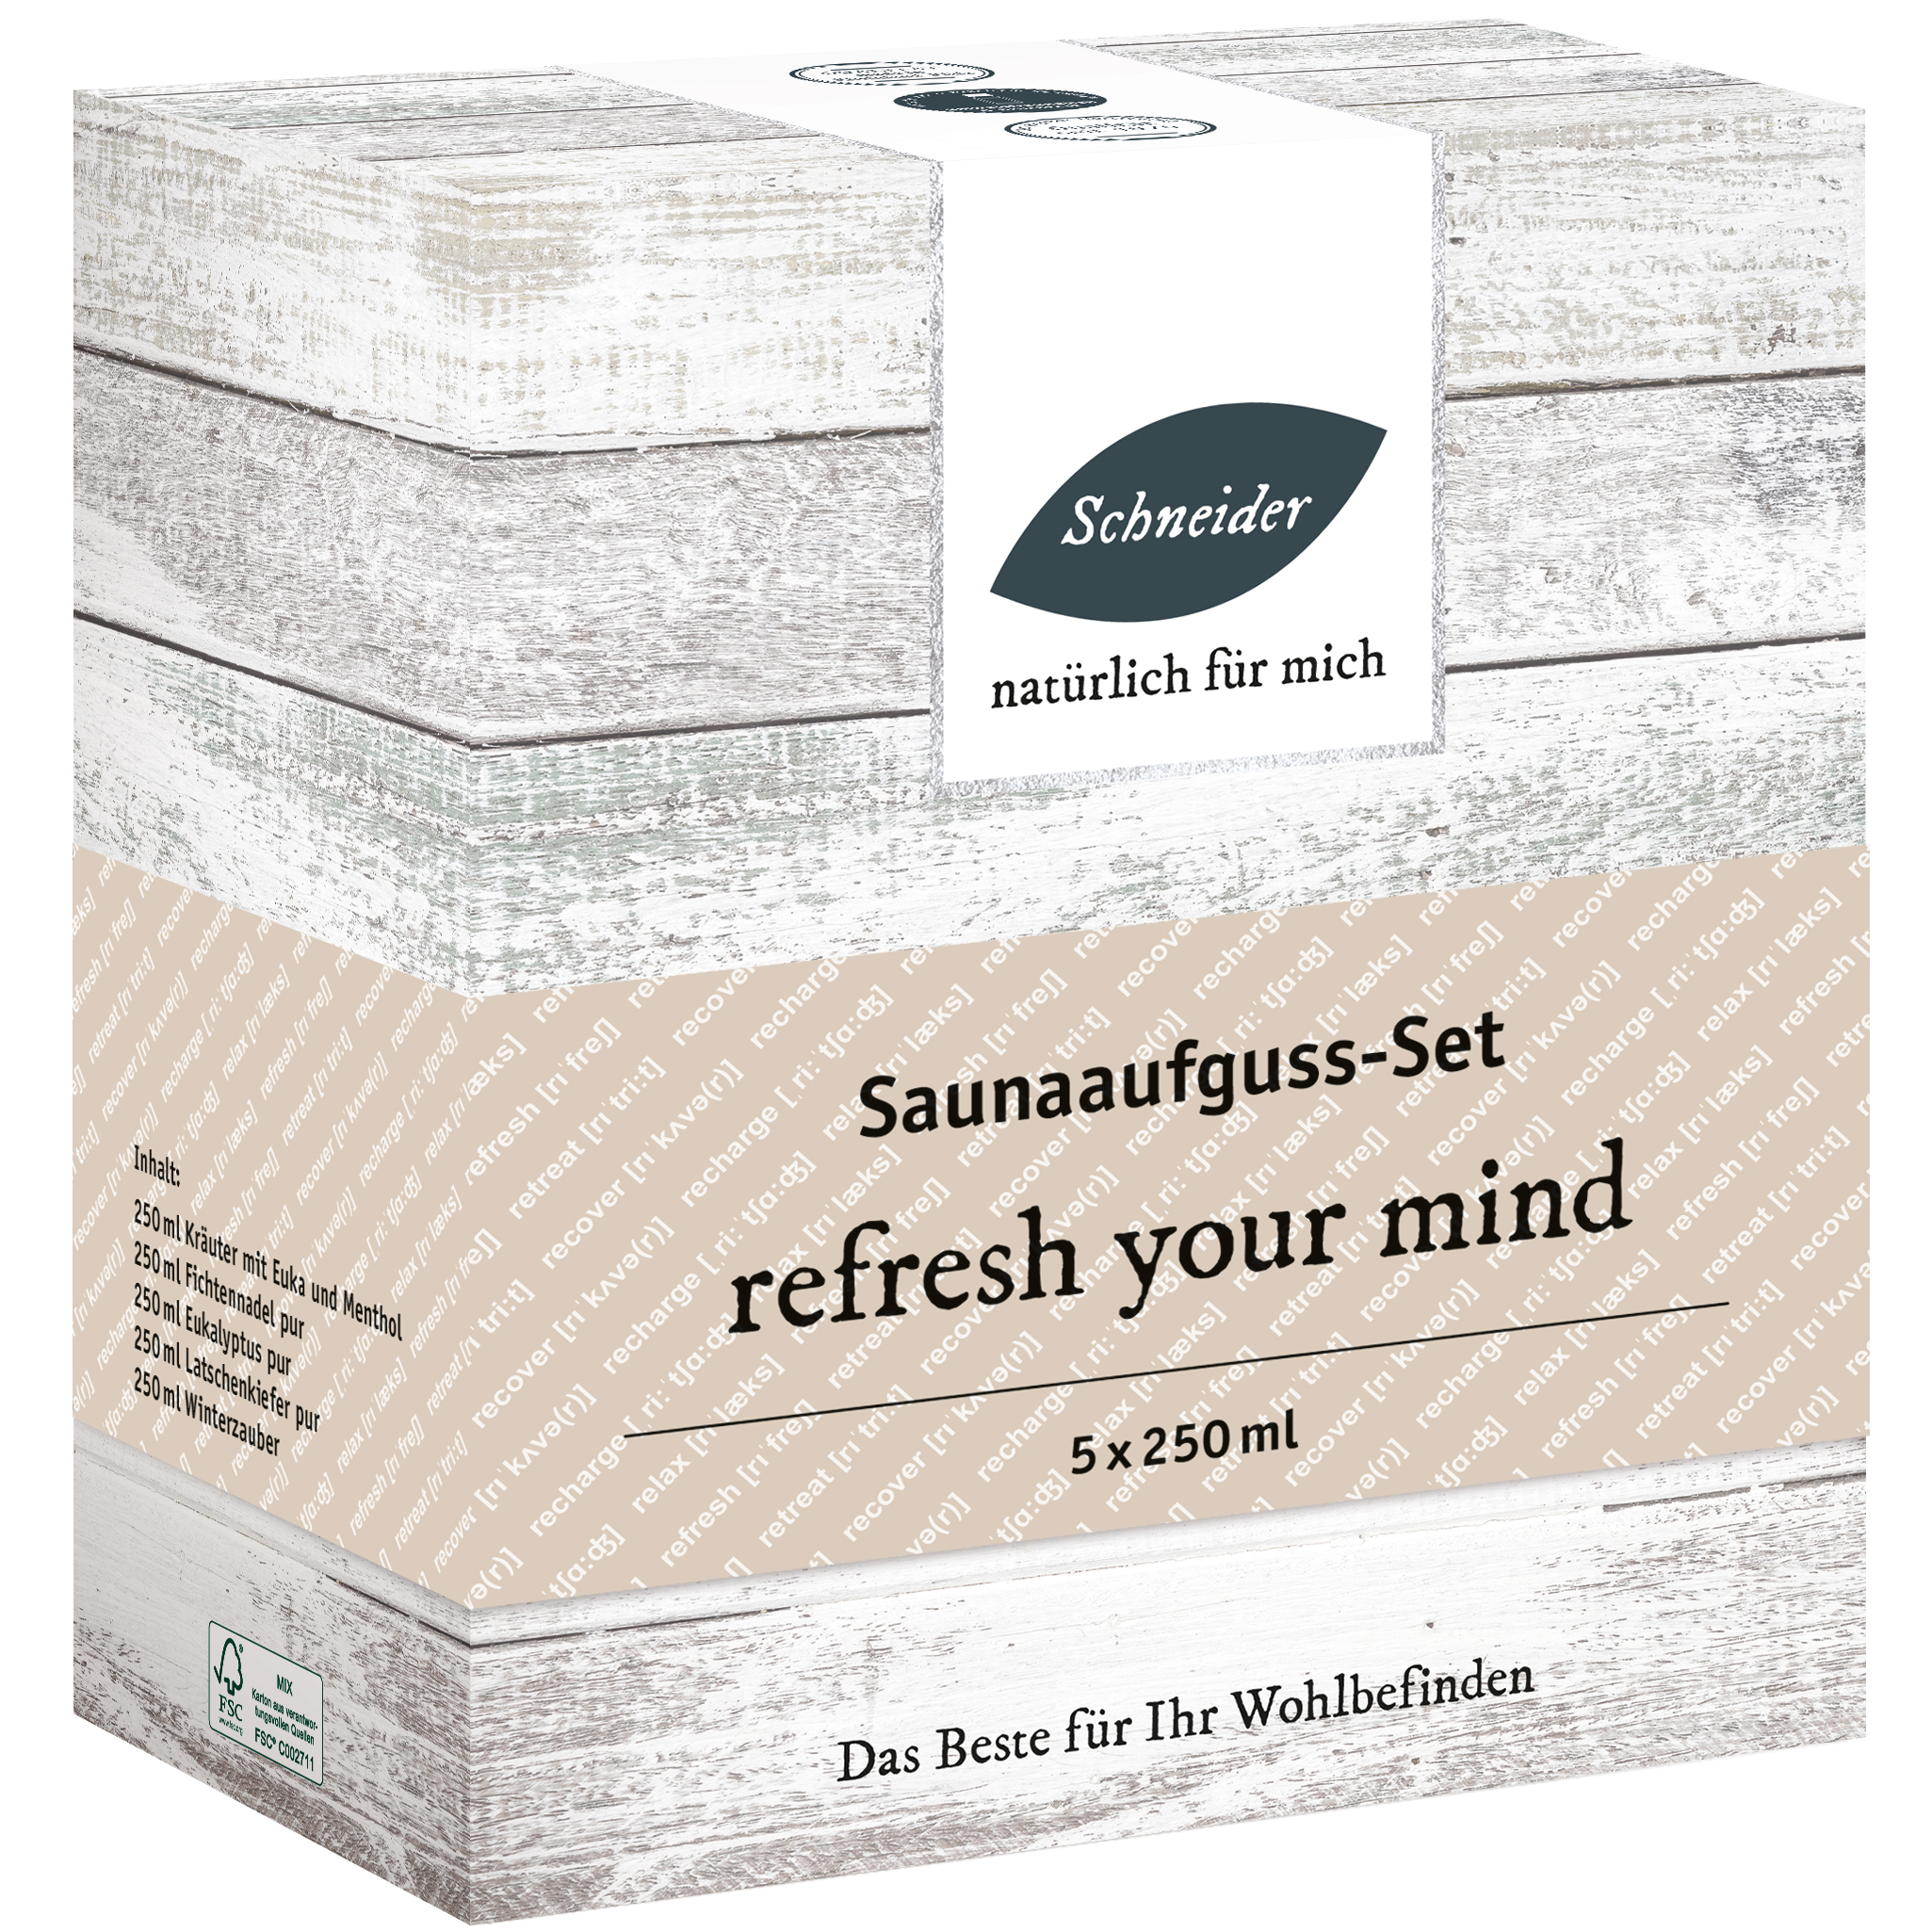 Saunaaufguss-Set - refresh your mind